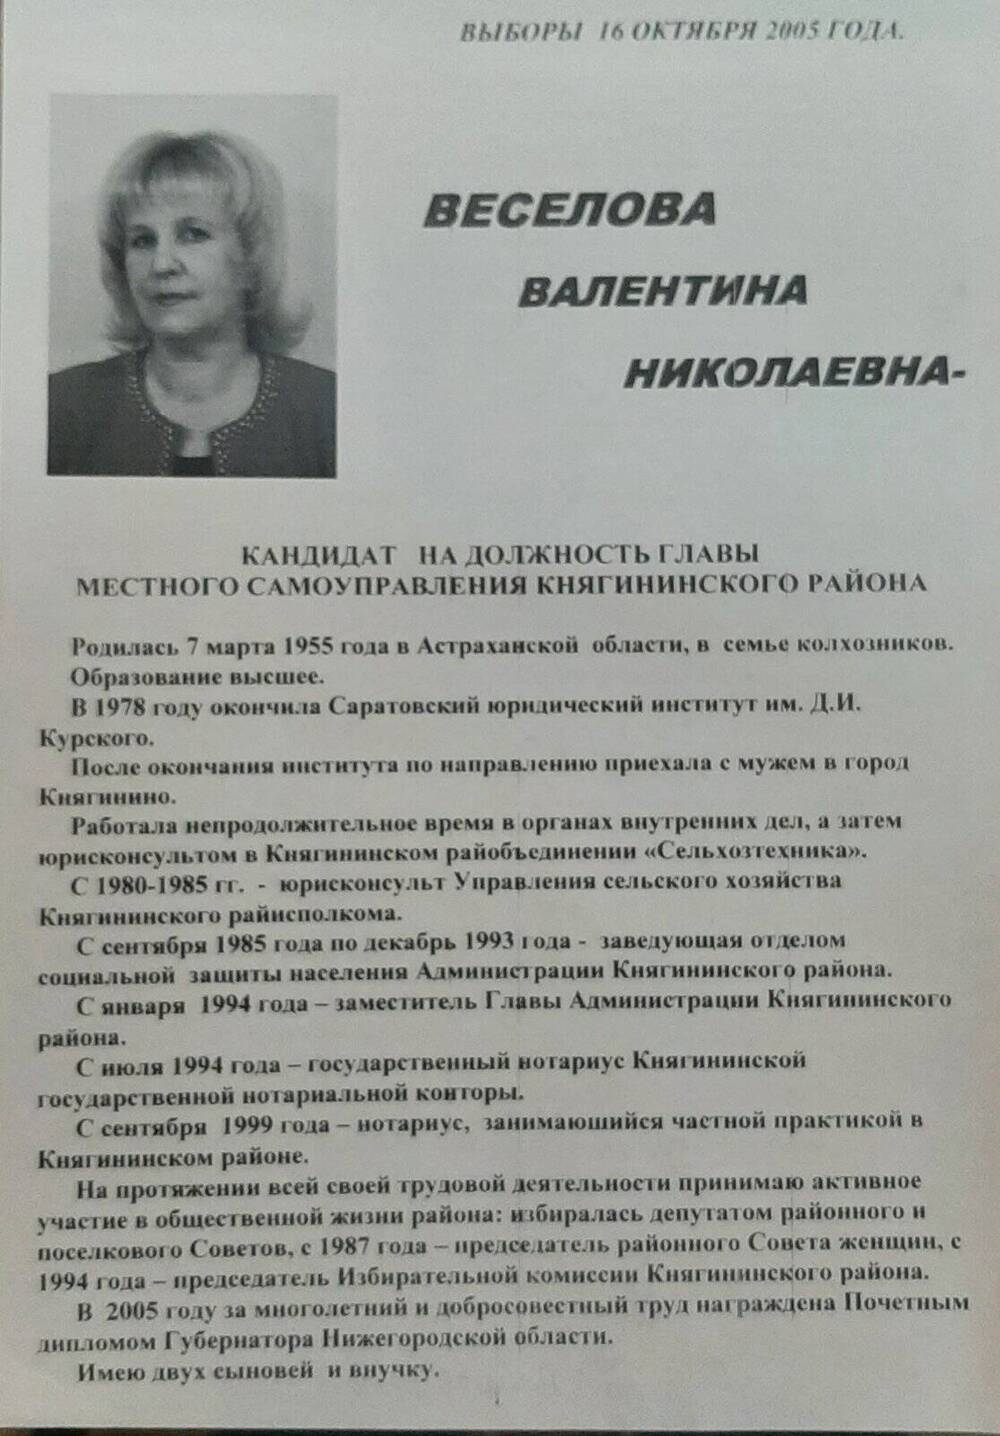 Листовка предвыборная в поддержку Веселовой Валентины Николаевны на должность главы районной администрации.